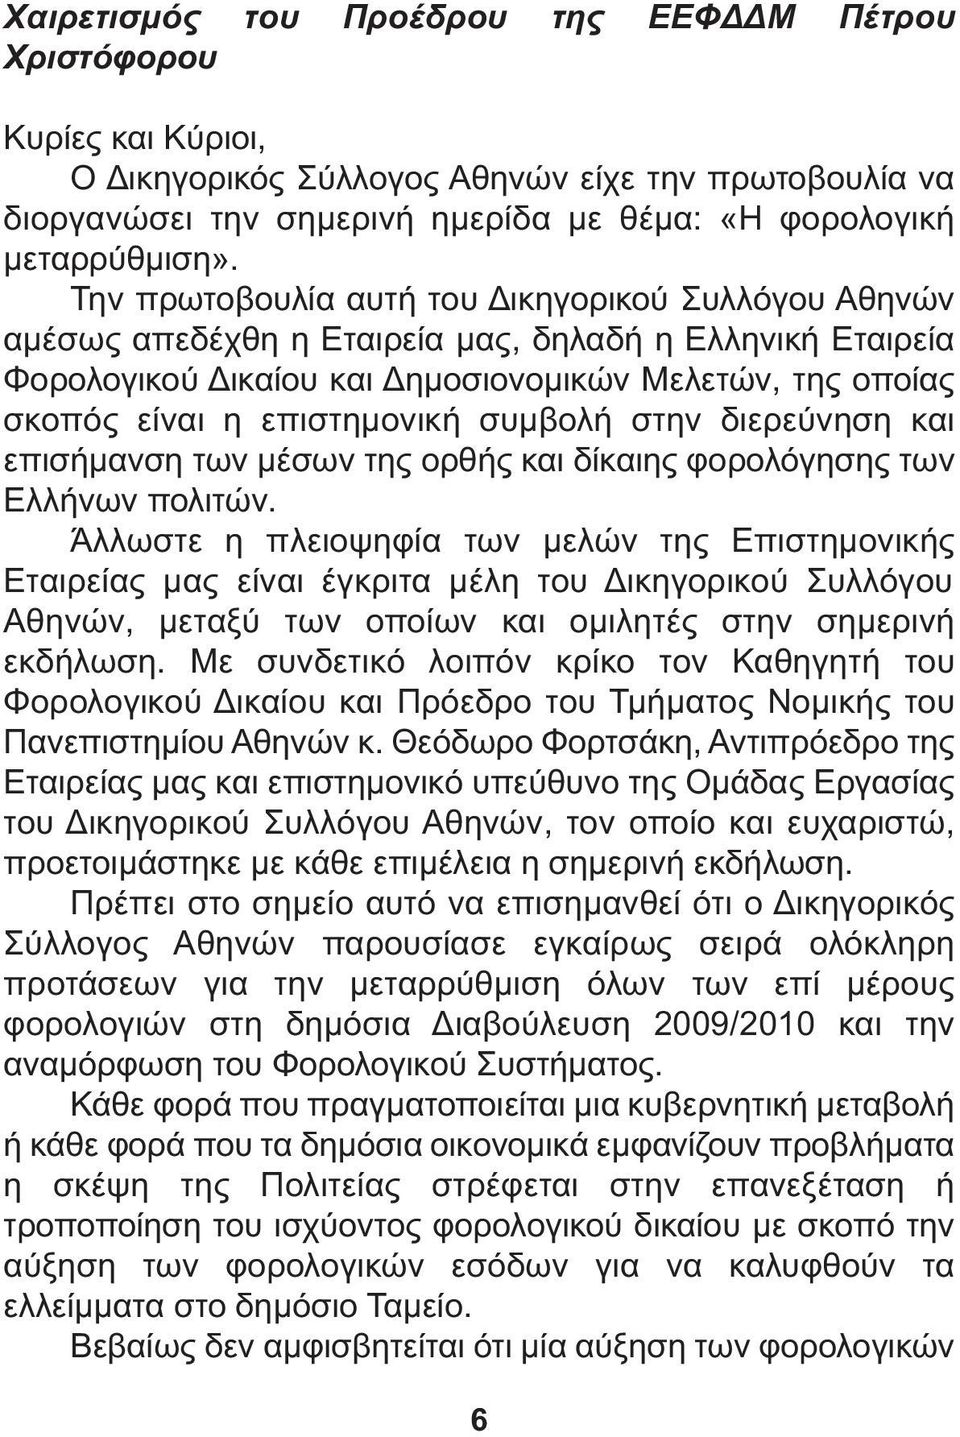 συµβολή στην διερεύνηση και επισήµανση των µέσων της ορθής και δίκαιης φορολόγησης των Ελλήνων πολιτών.